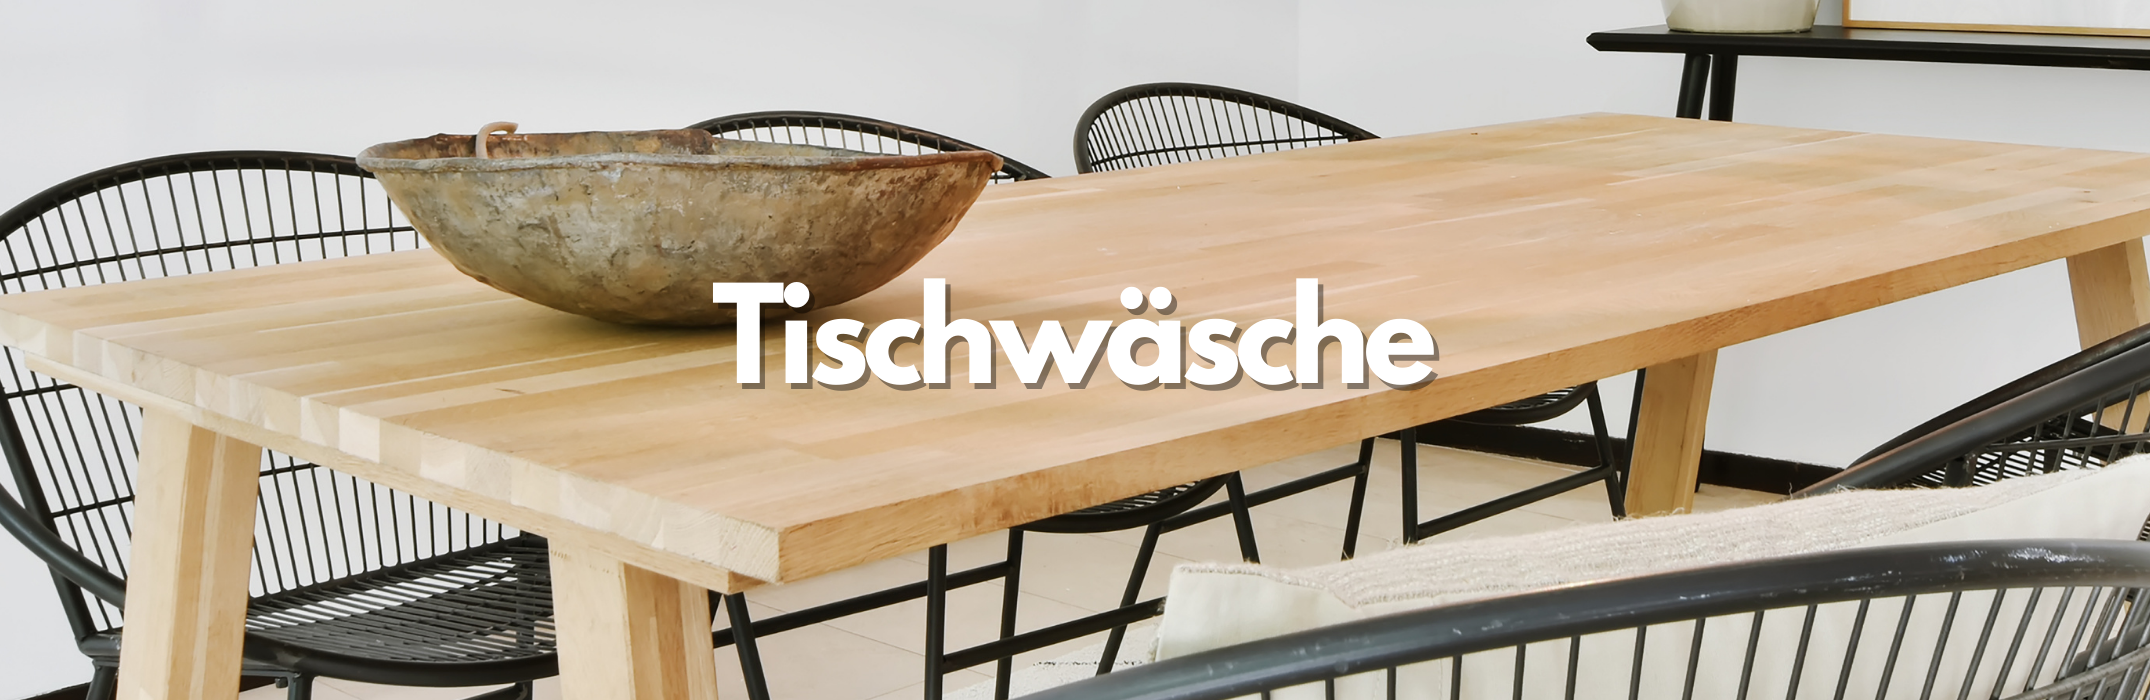 Der Hingucker auf jeder Tafel - Hochwertige Tischläufer – WohnDirect.com -  Heimtextilien und Wohnaccessoires